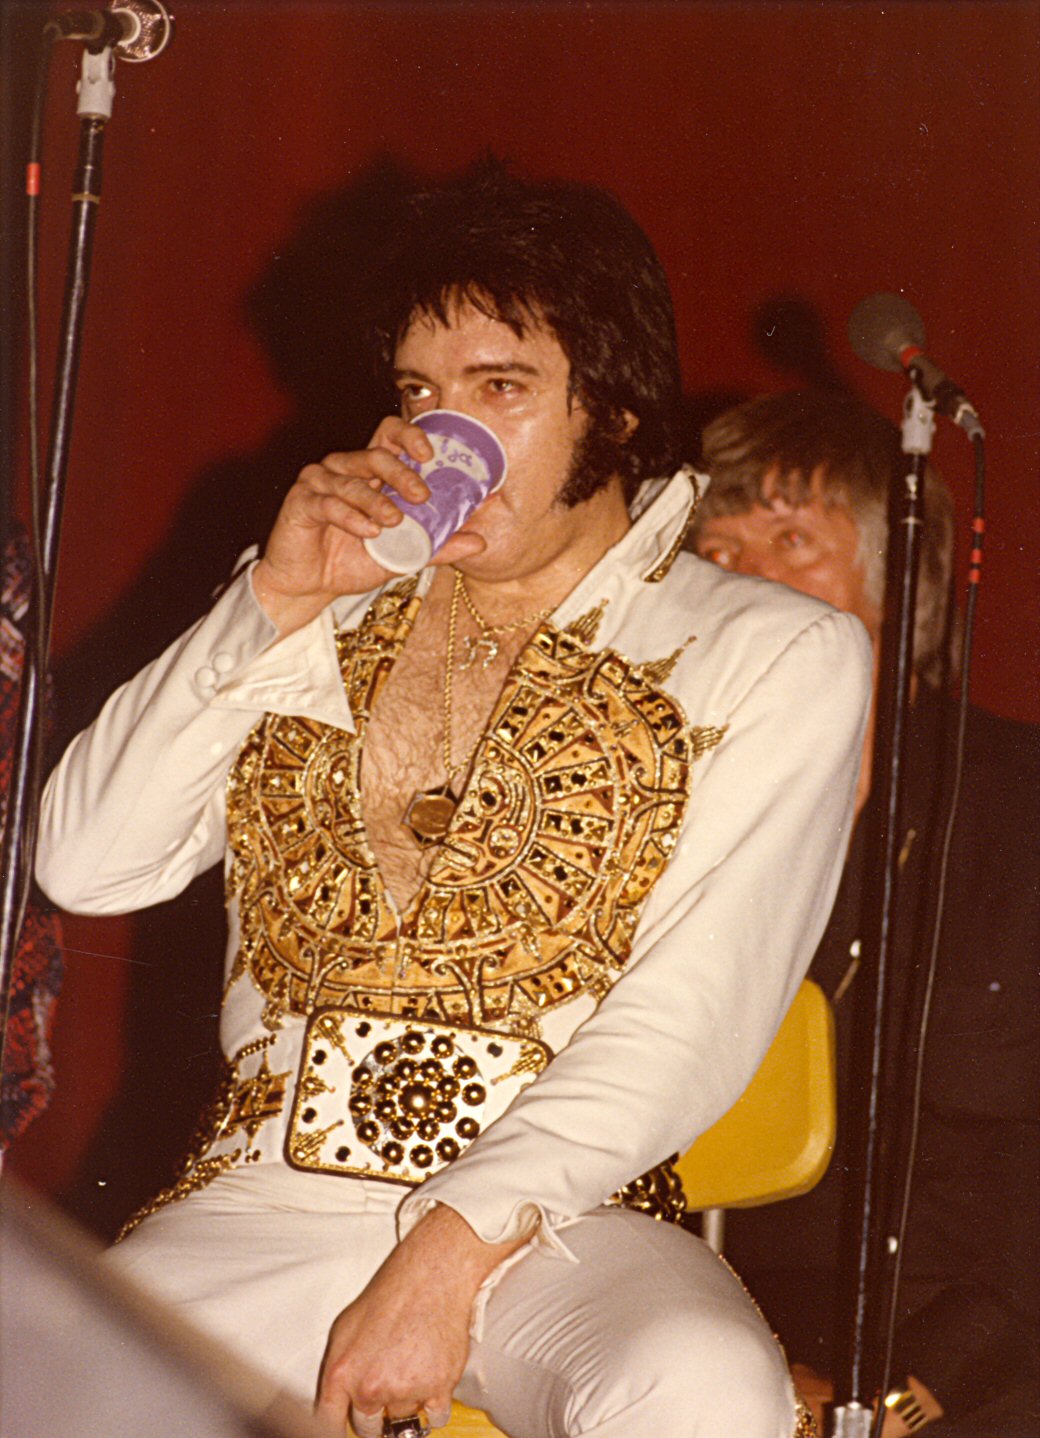 elvis 1977 concert tour